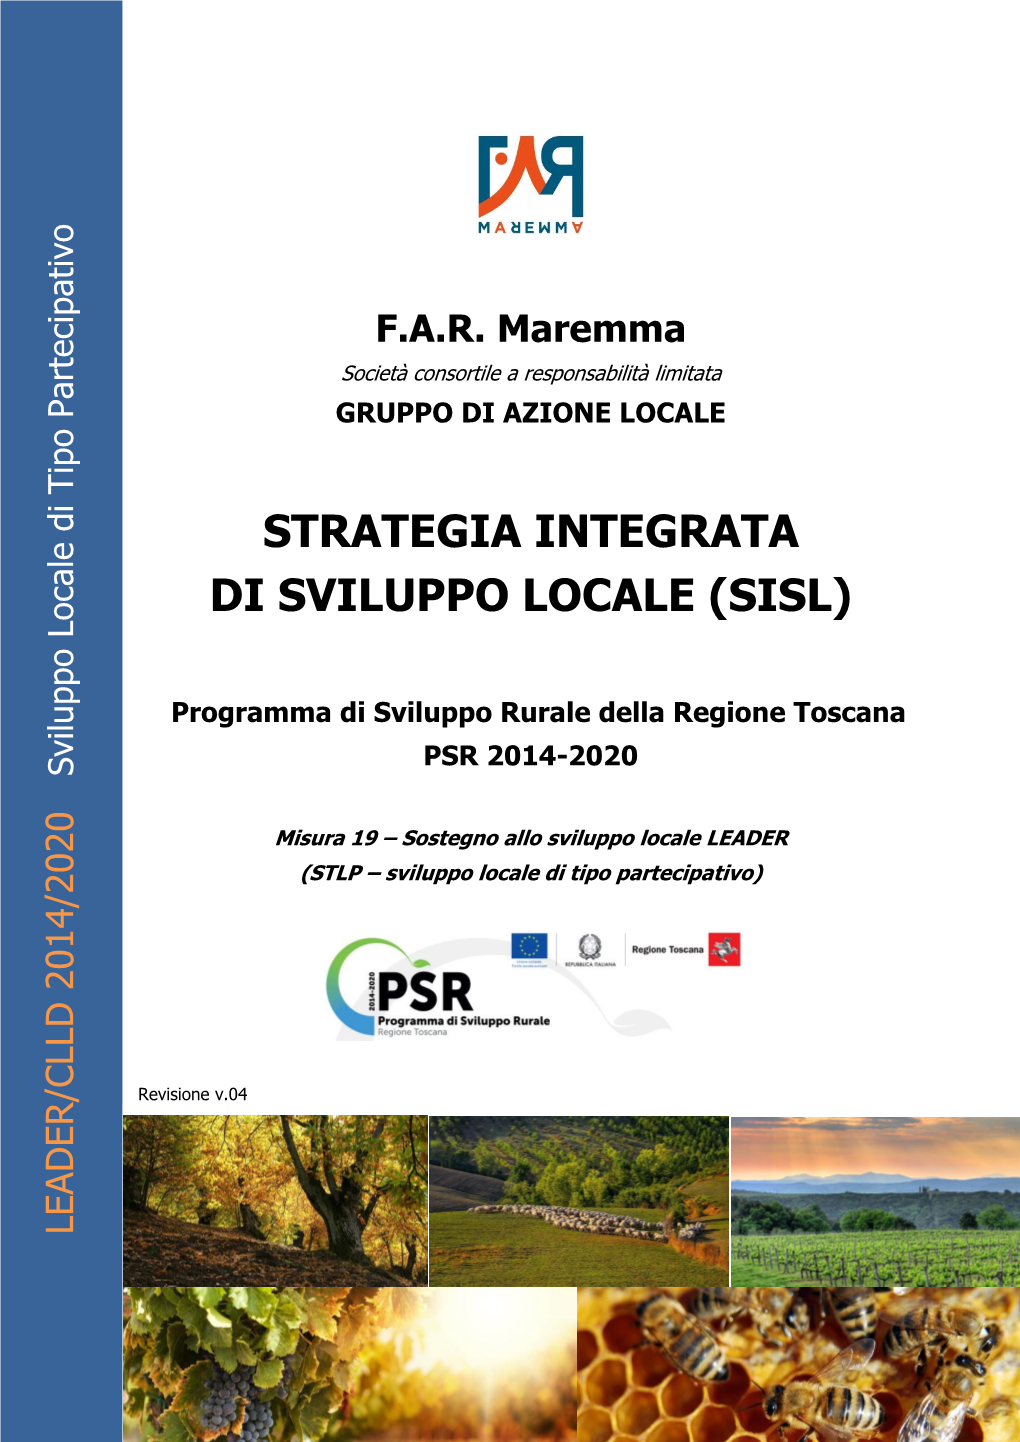 SISL F.A.R. Maremma 2014-2020